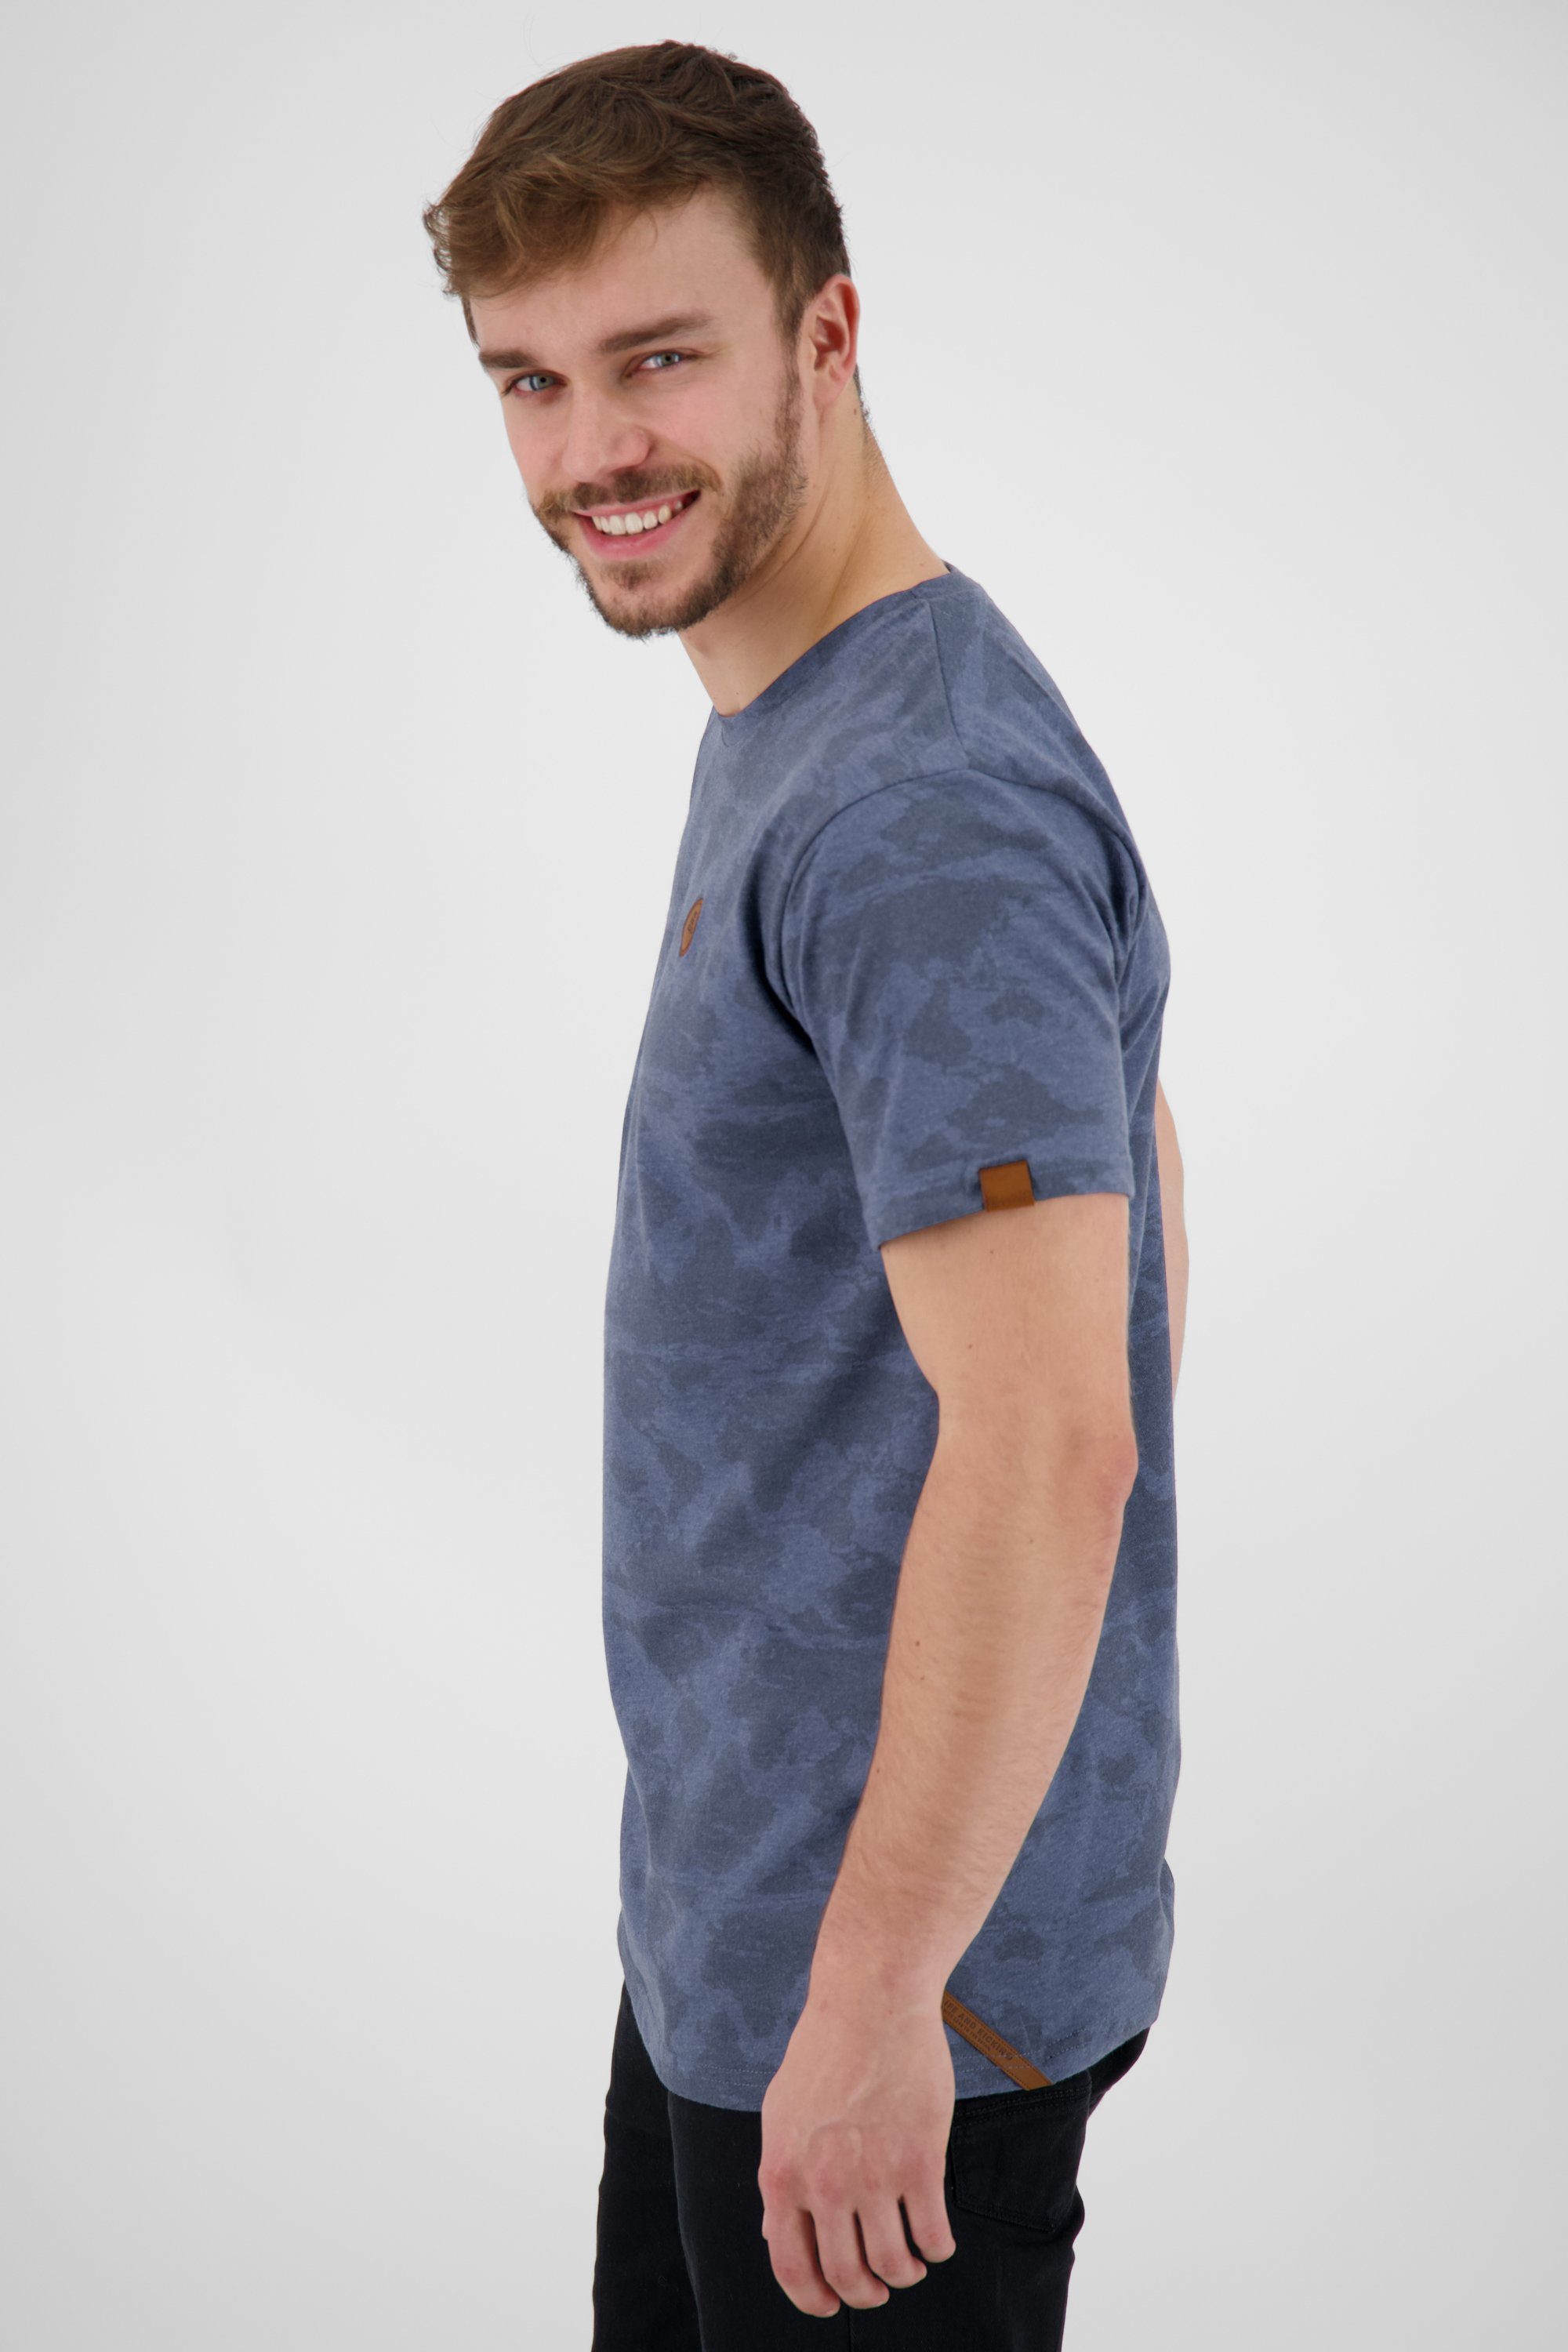 NicAK Alife nightblue Shirt Herren T-Shirt & Kickin T-Shirt